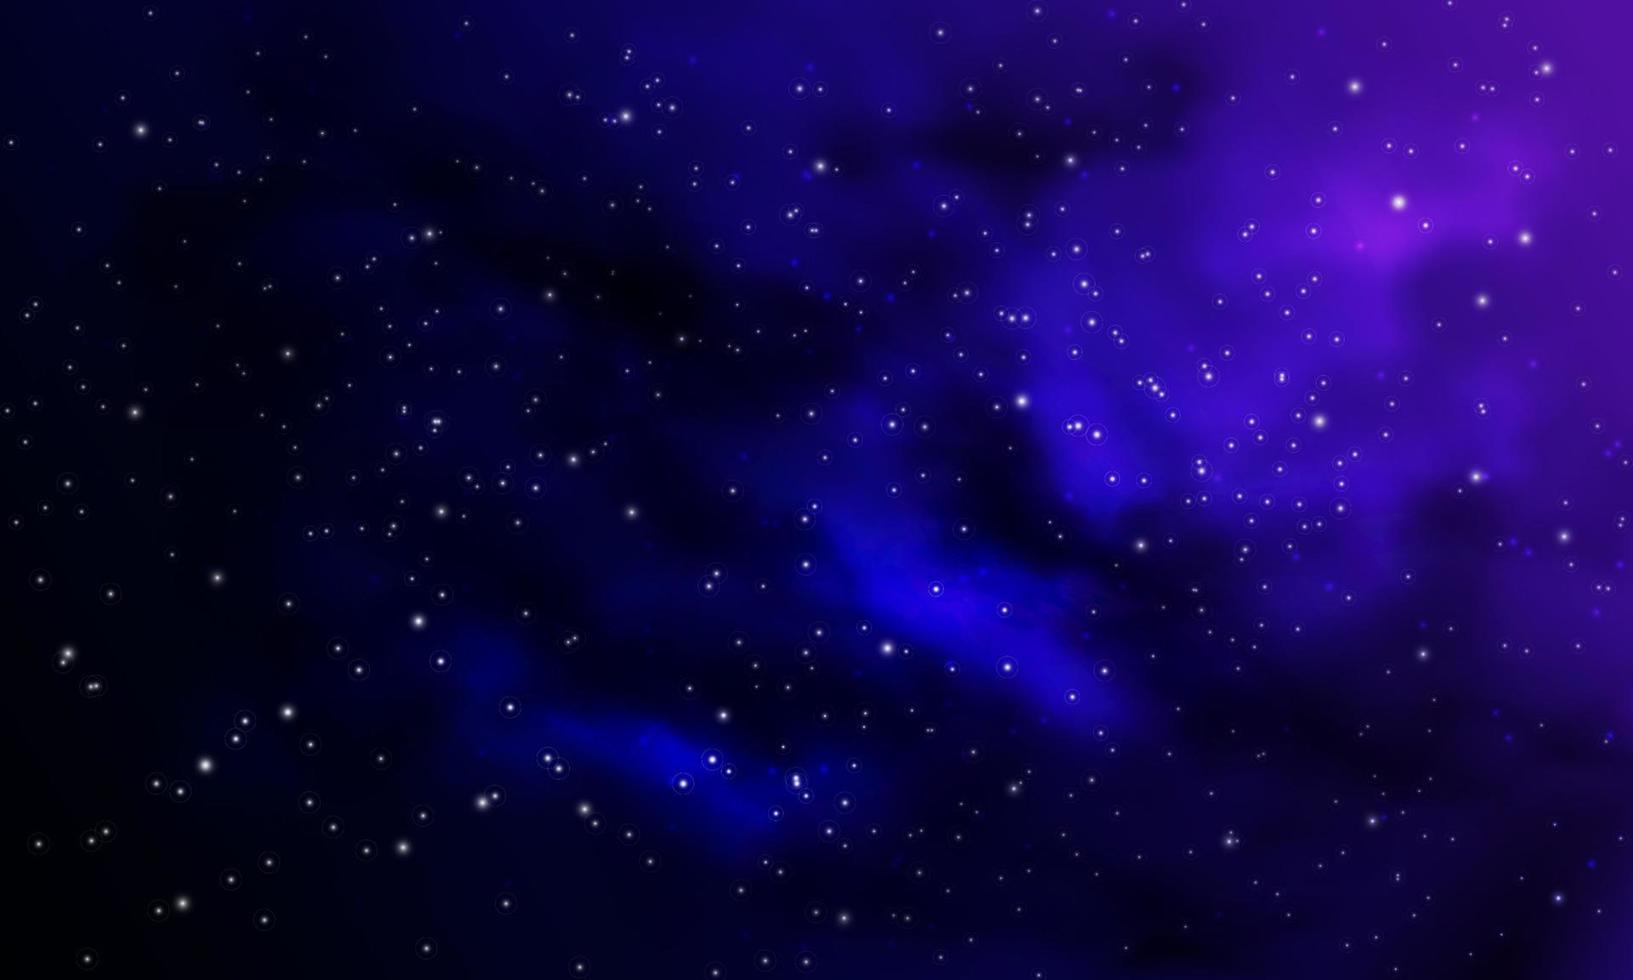 raum hintergrund realistisch lila nebel leuchtende sterne kosmos sternenstaub milchstraße galaxie unendliches universum und sternenklarer nachtvektor vektor